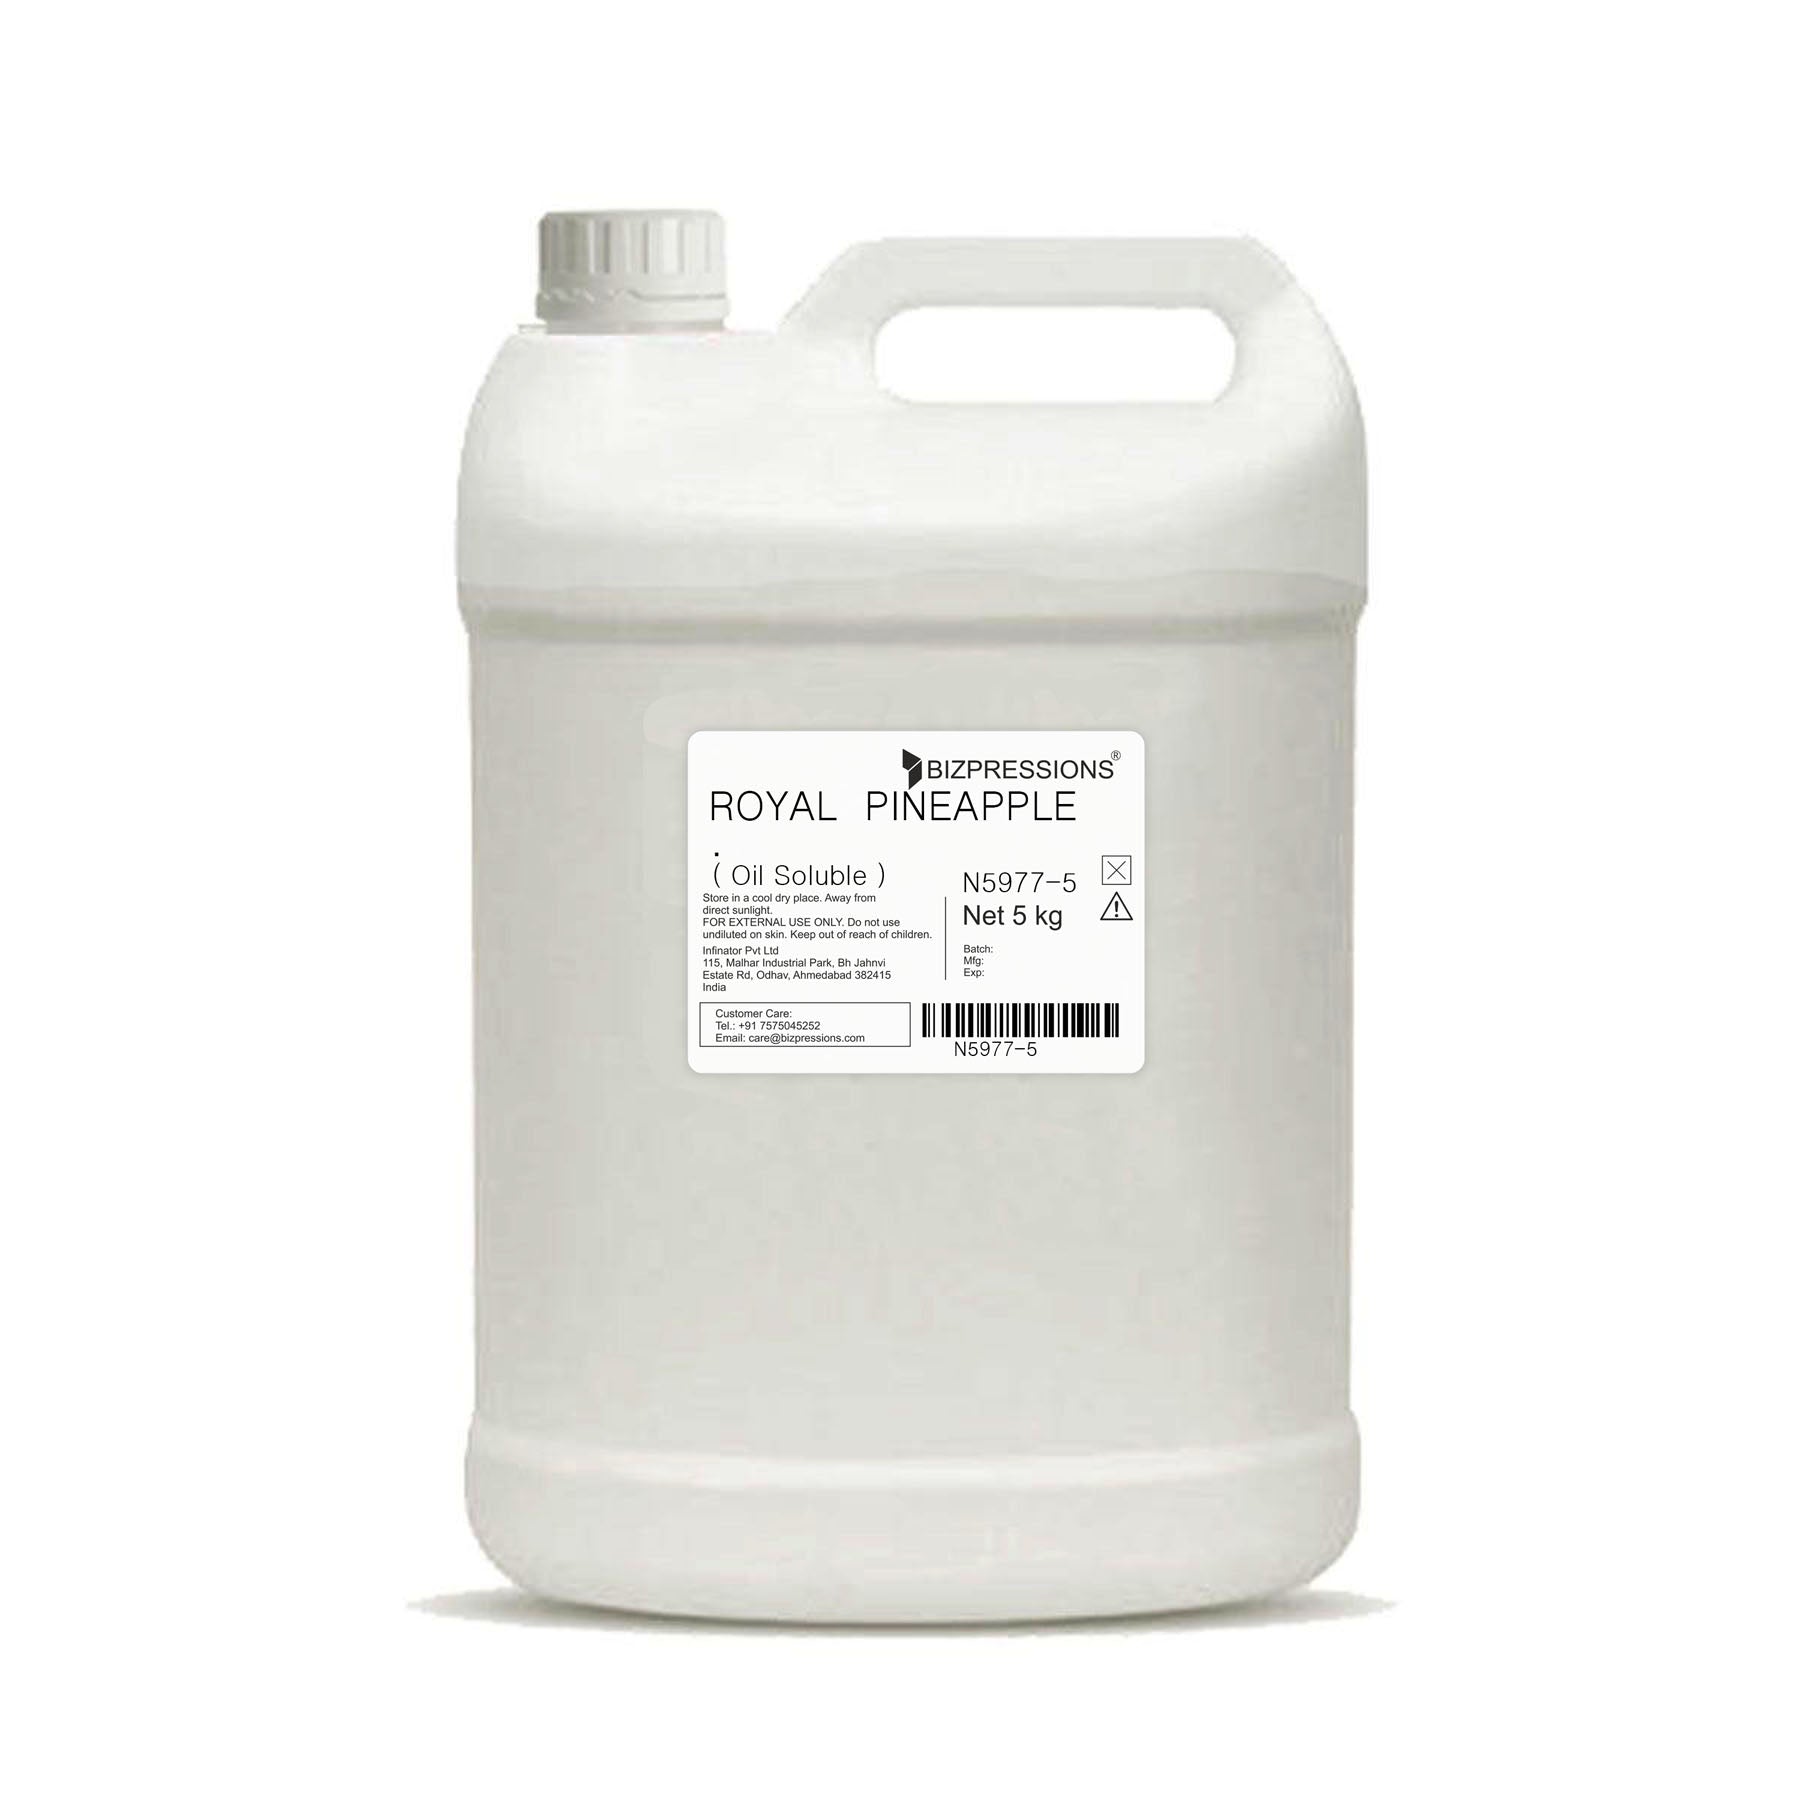 ROYAL PINEAPPLE - Fragrance ( Oil Soluble ) - 5 kg